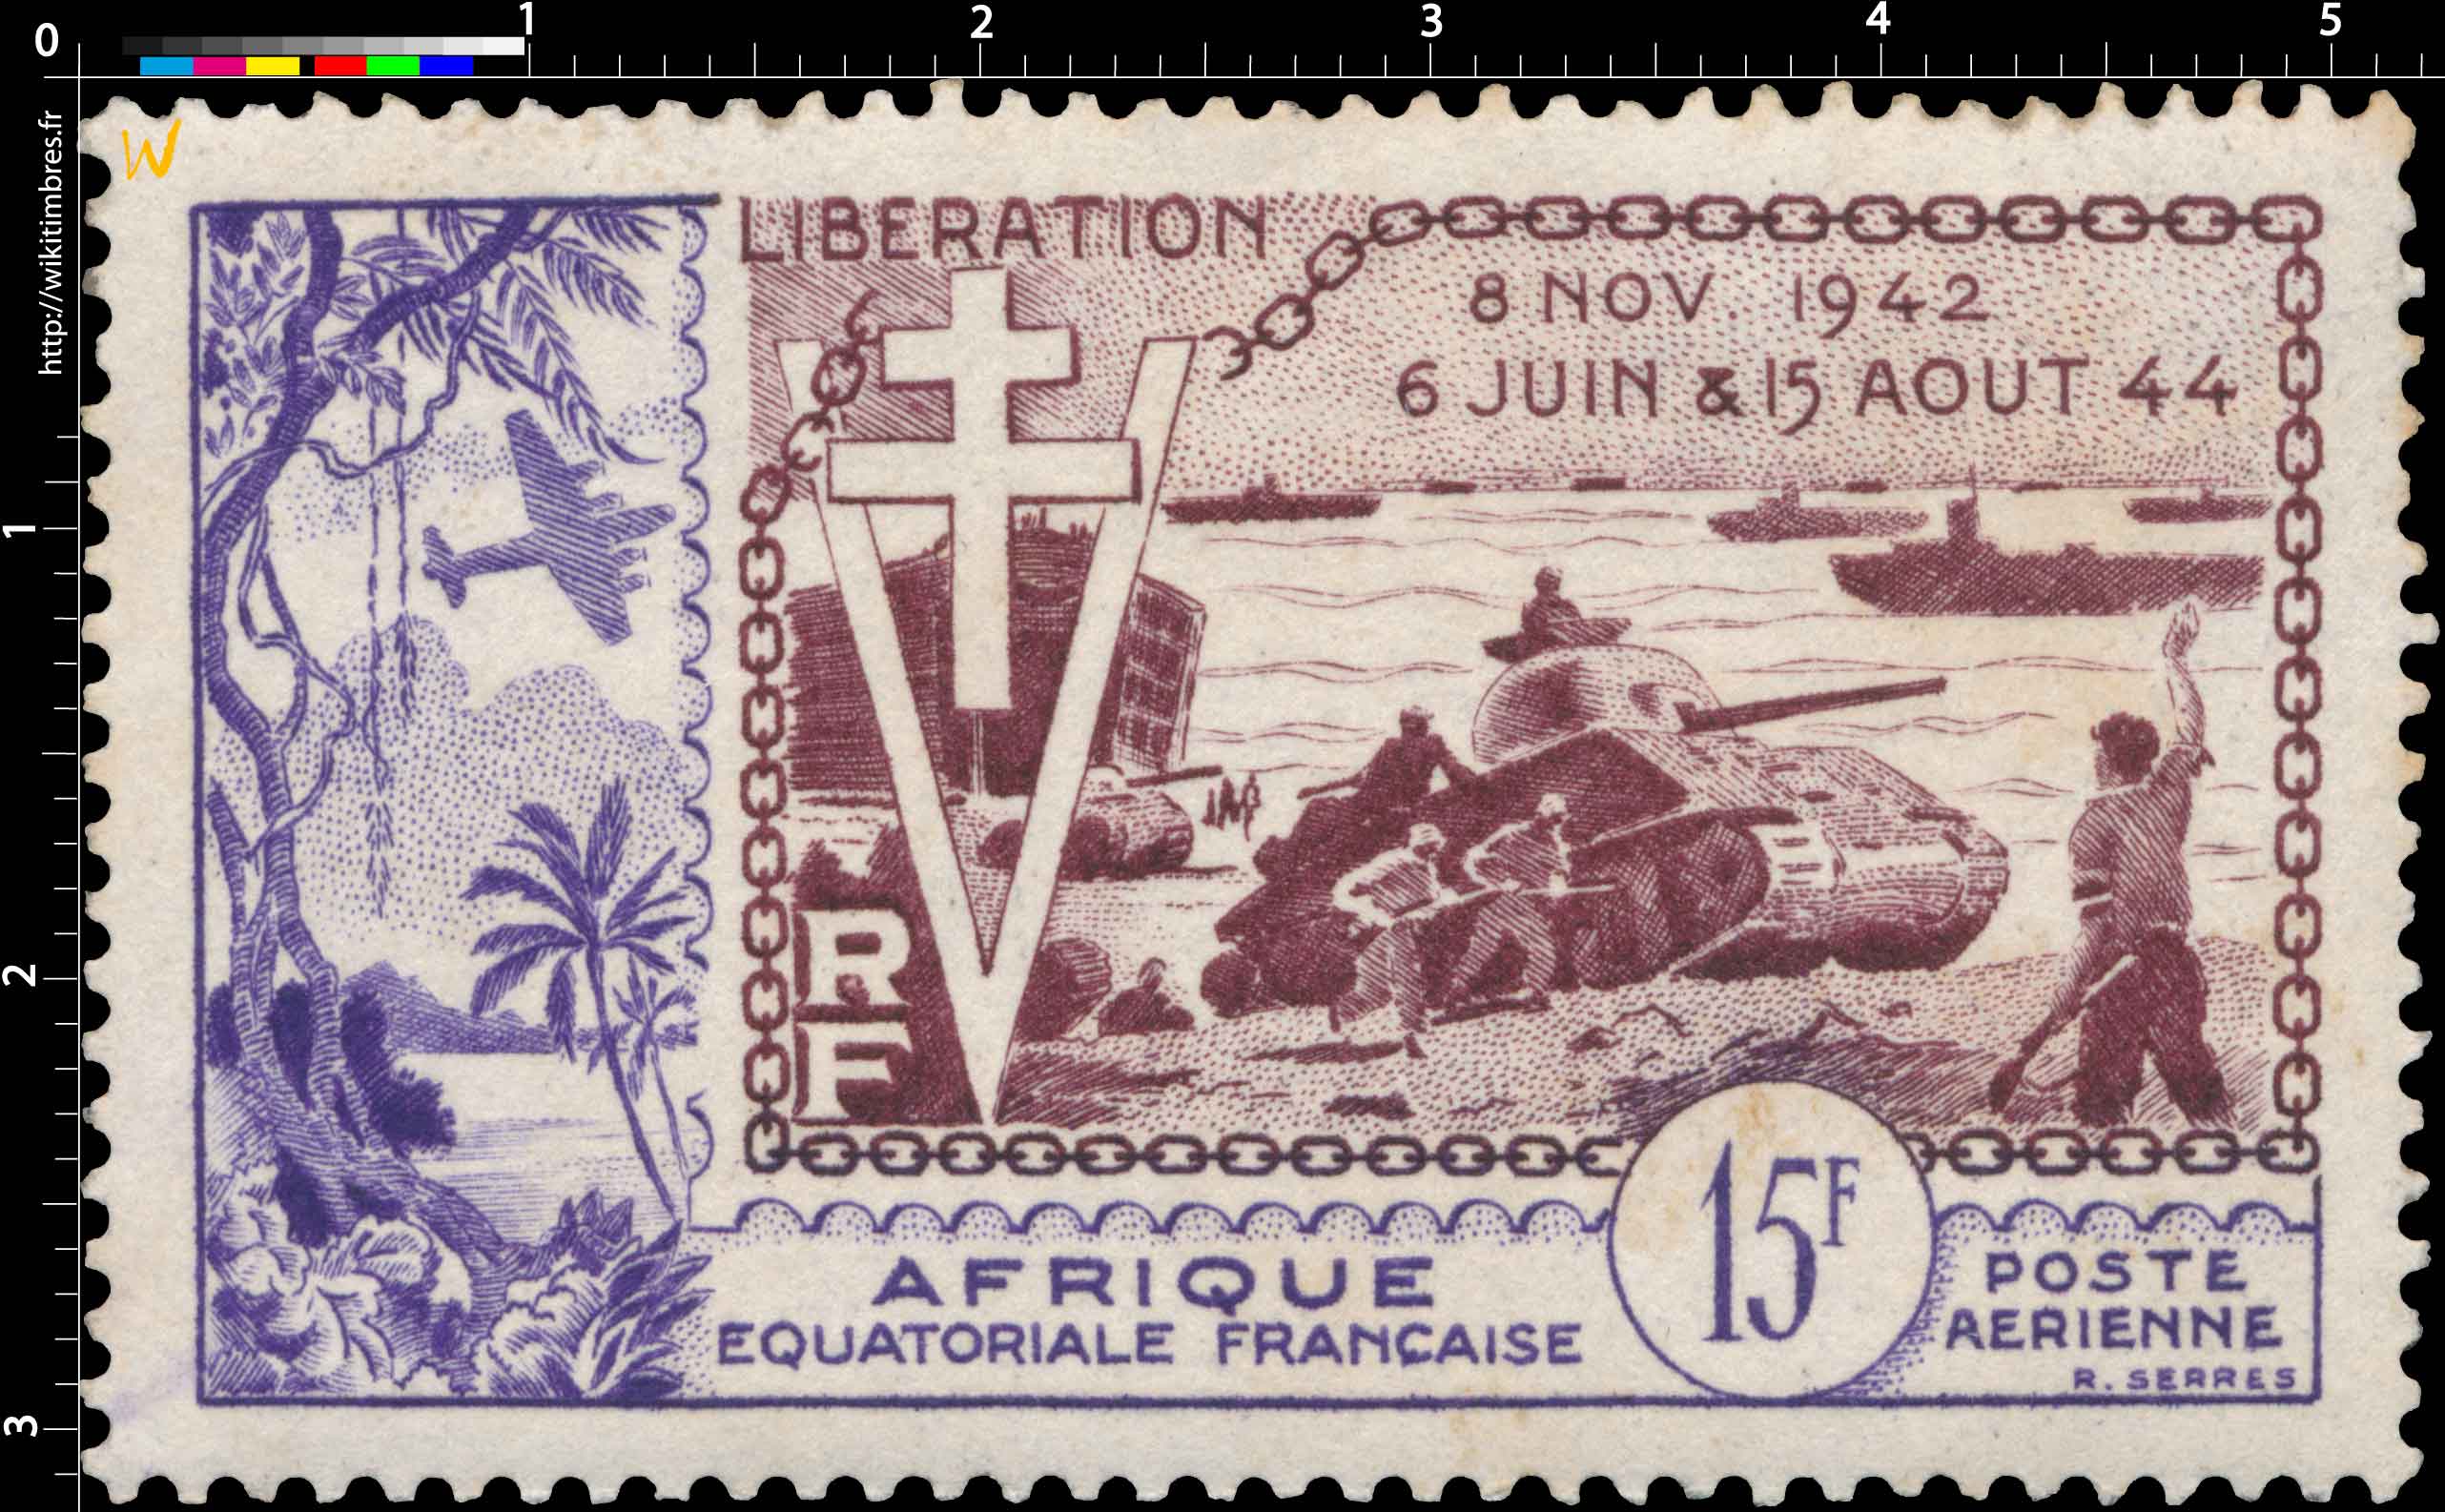 Libération 8 Nov 1942 16 Juin & 15 Aout 44 poste aérienne